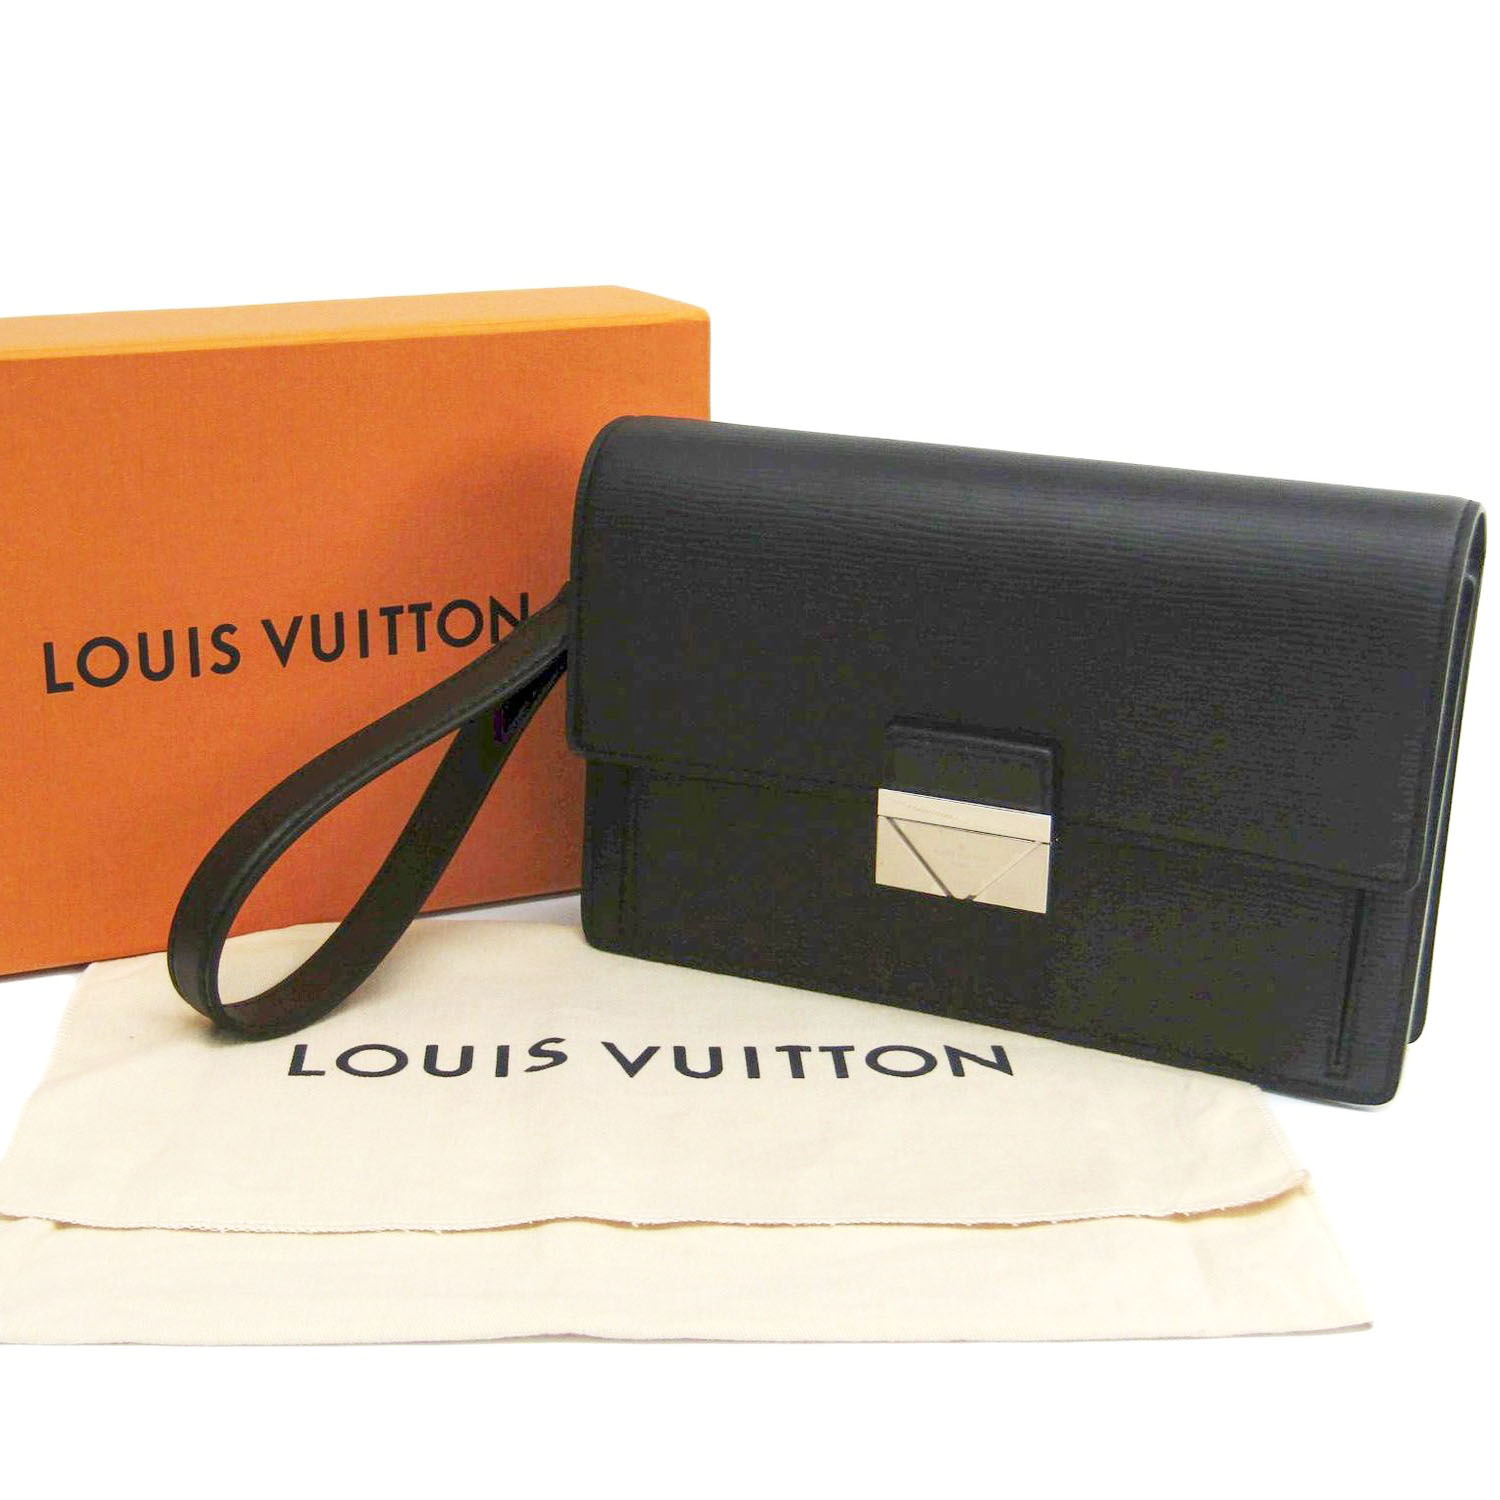 Ví cầm tay Louis Vuitton Clutch Thames da Epi màu đen siêu cấp